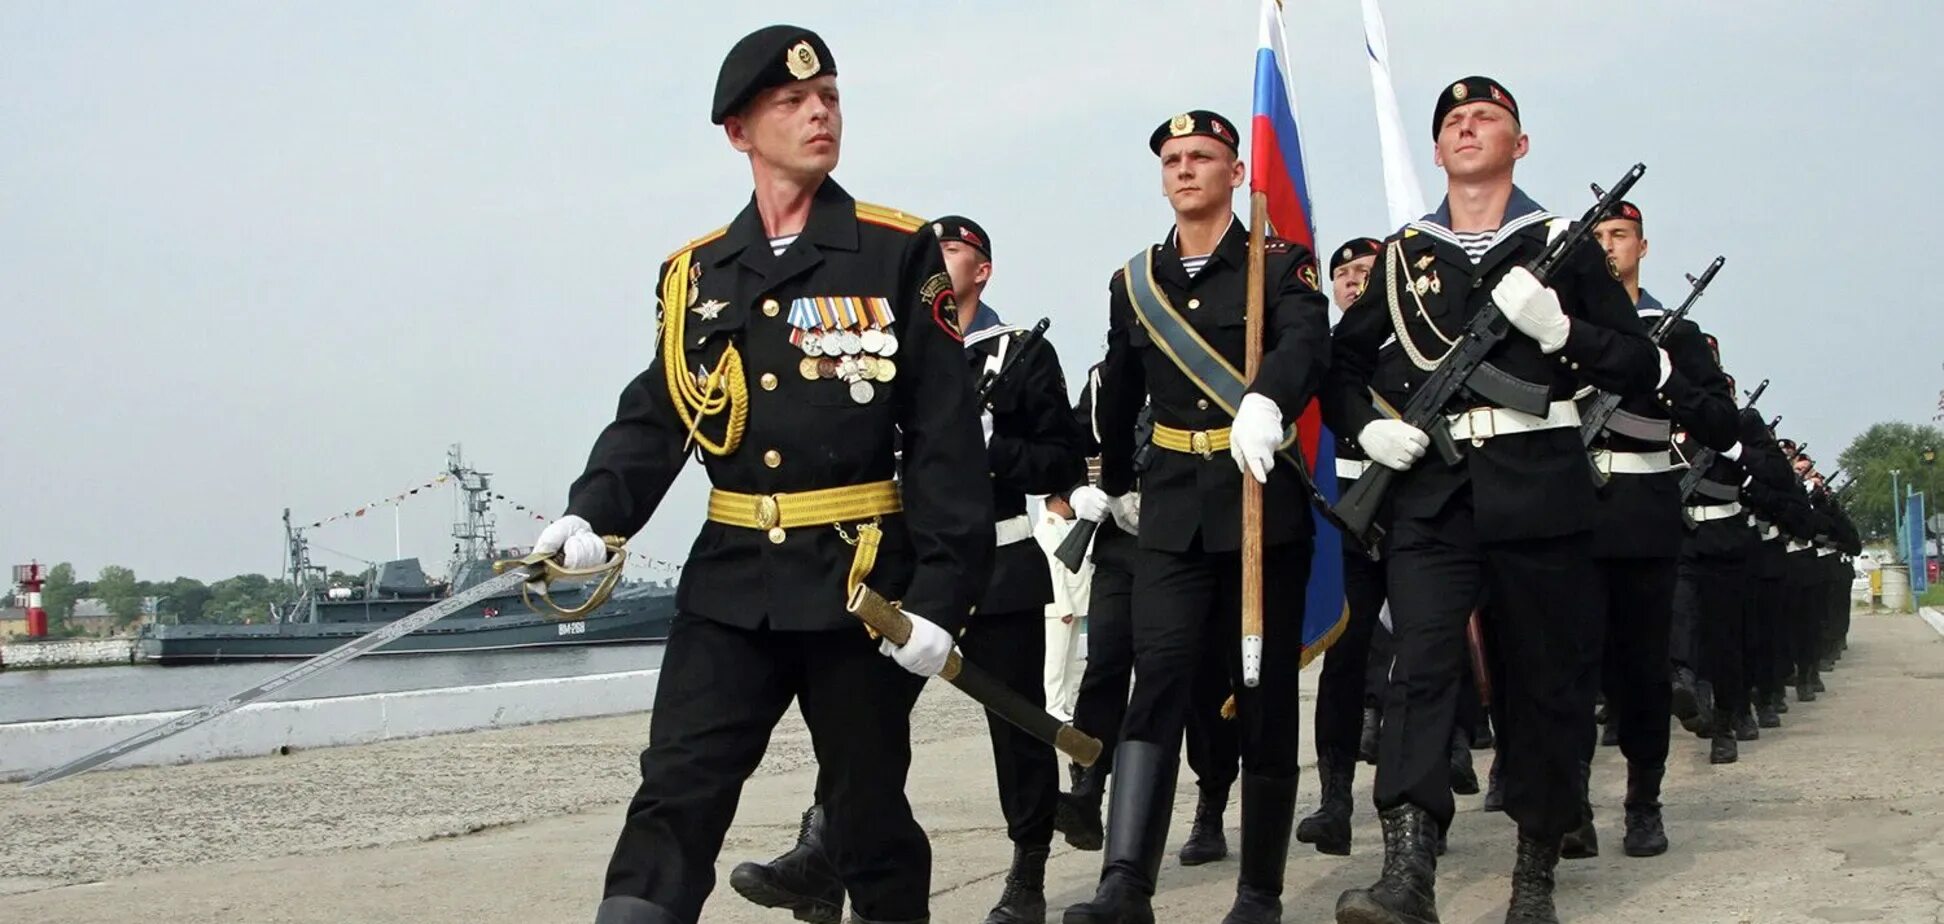 27 ноября 2006 г. Морская пехота ВМФ РФ. 155 ОБРМП ТОФ. Морская пехота ВМФ РФ 2022. Морская пехота вс РФ парадная.